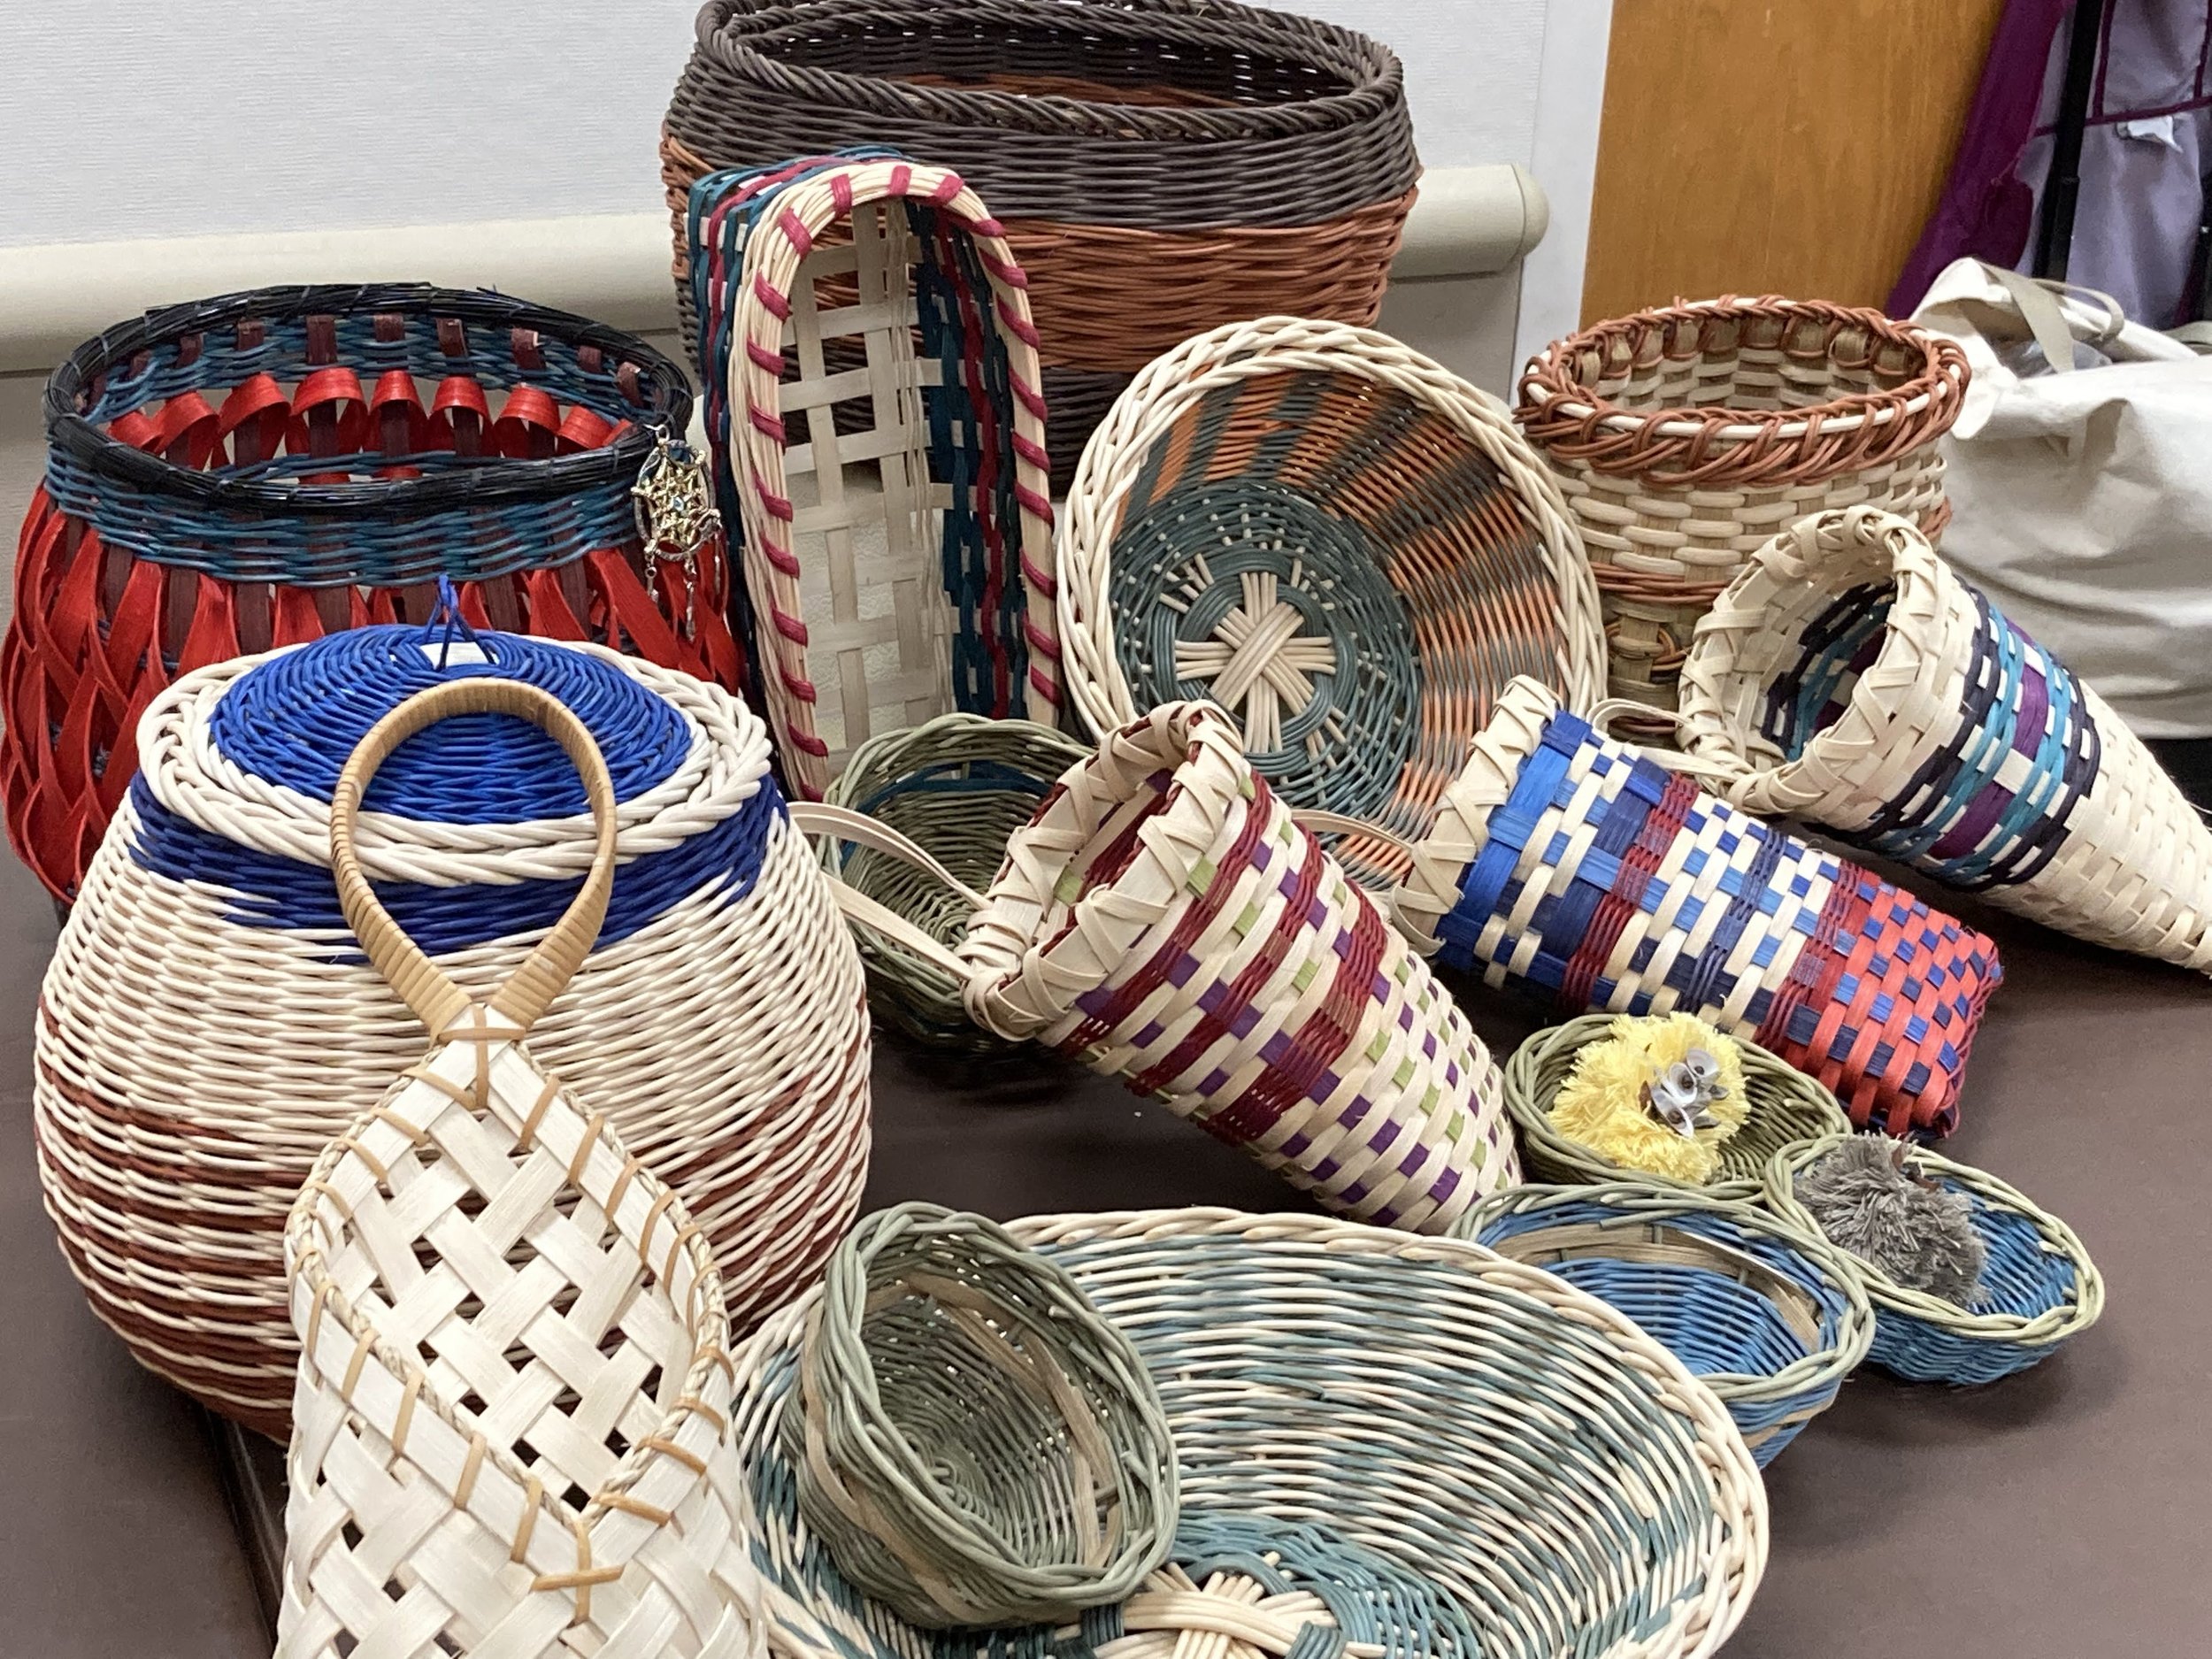 Basket Artisans of Arizona